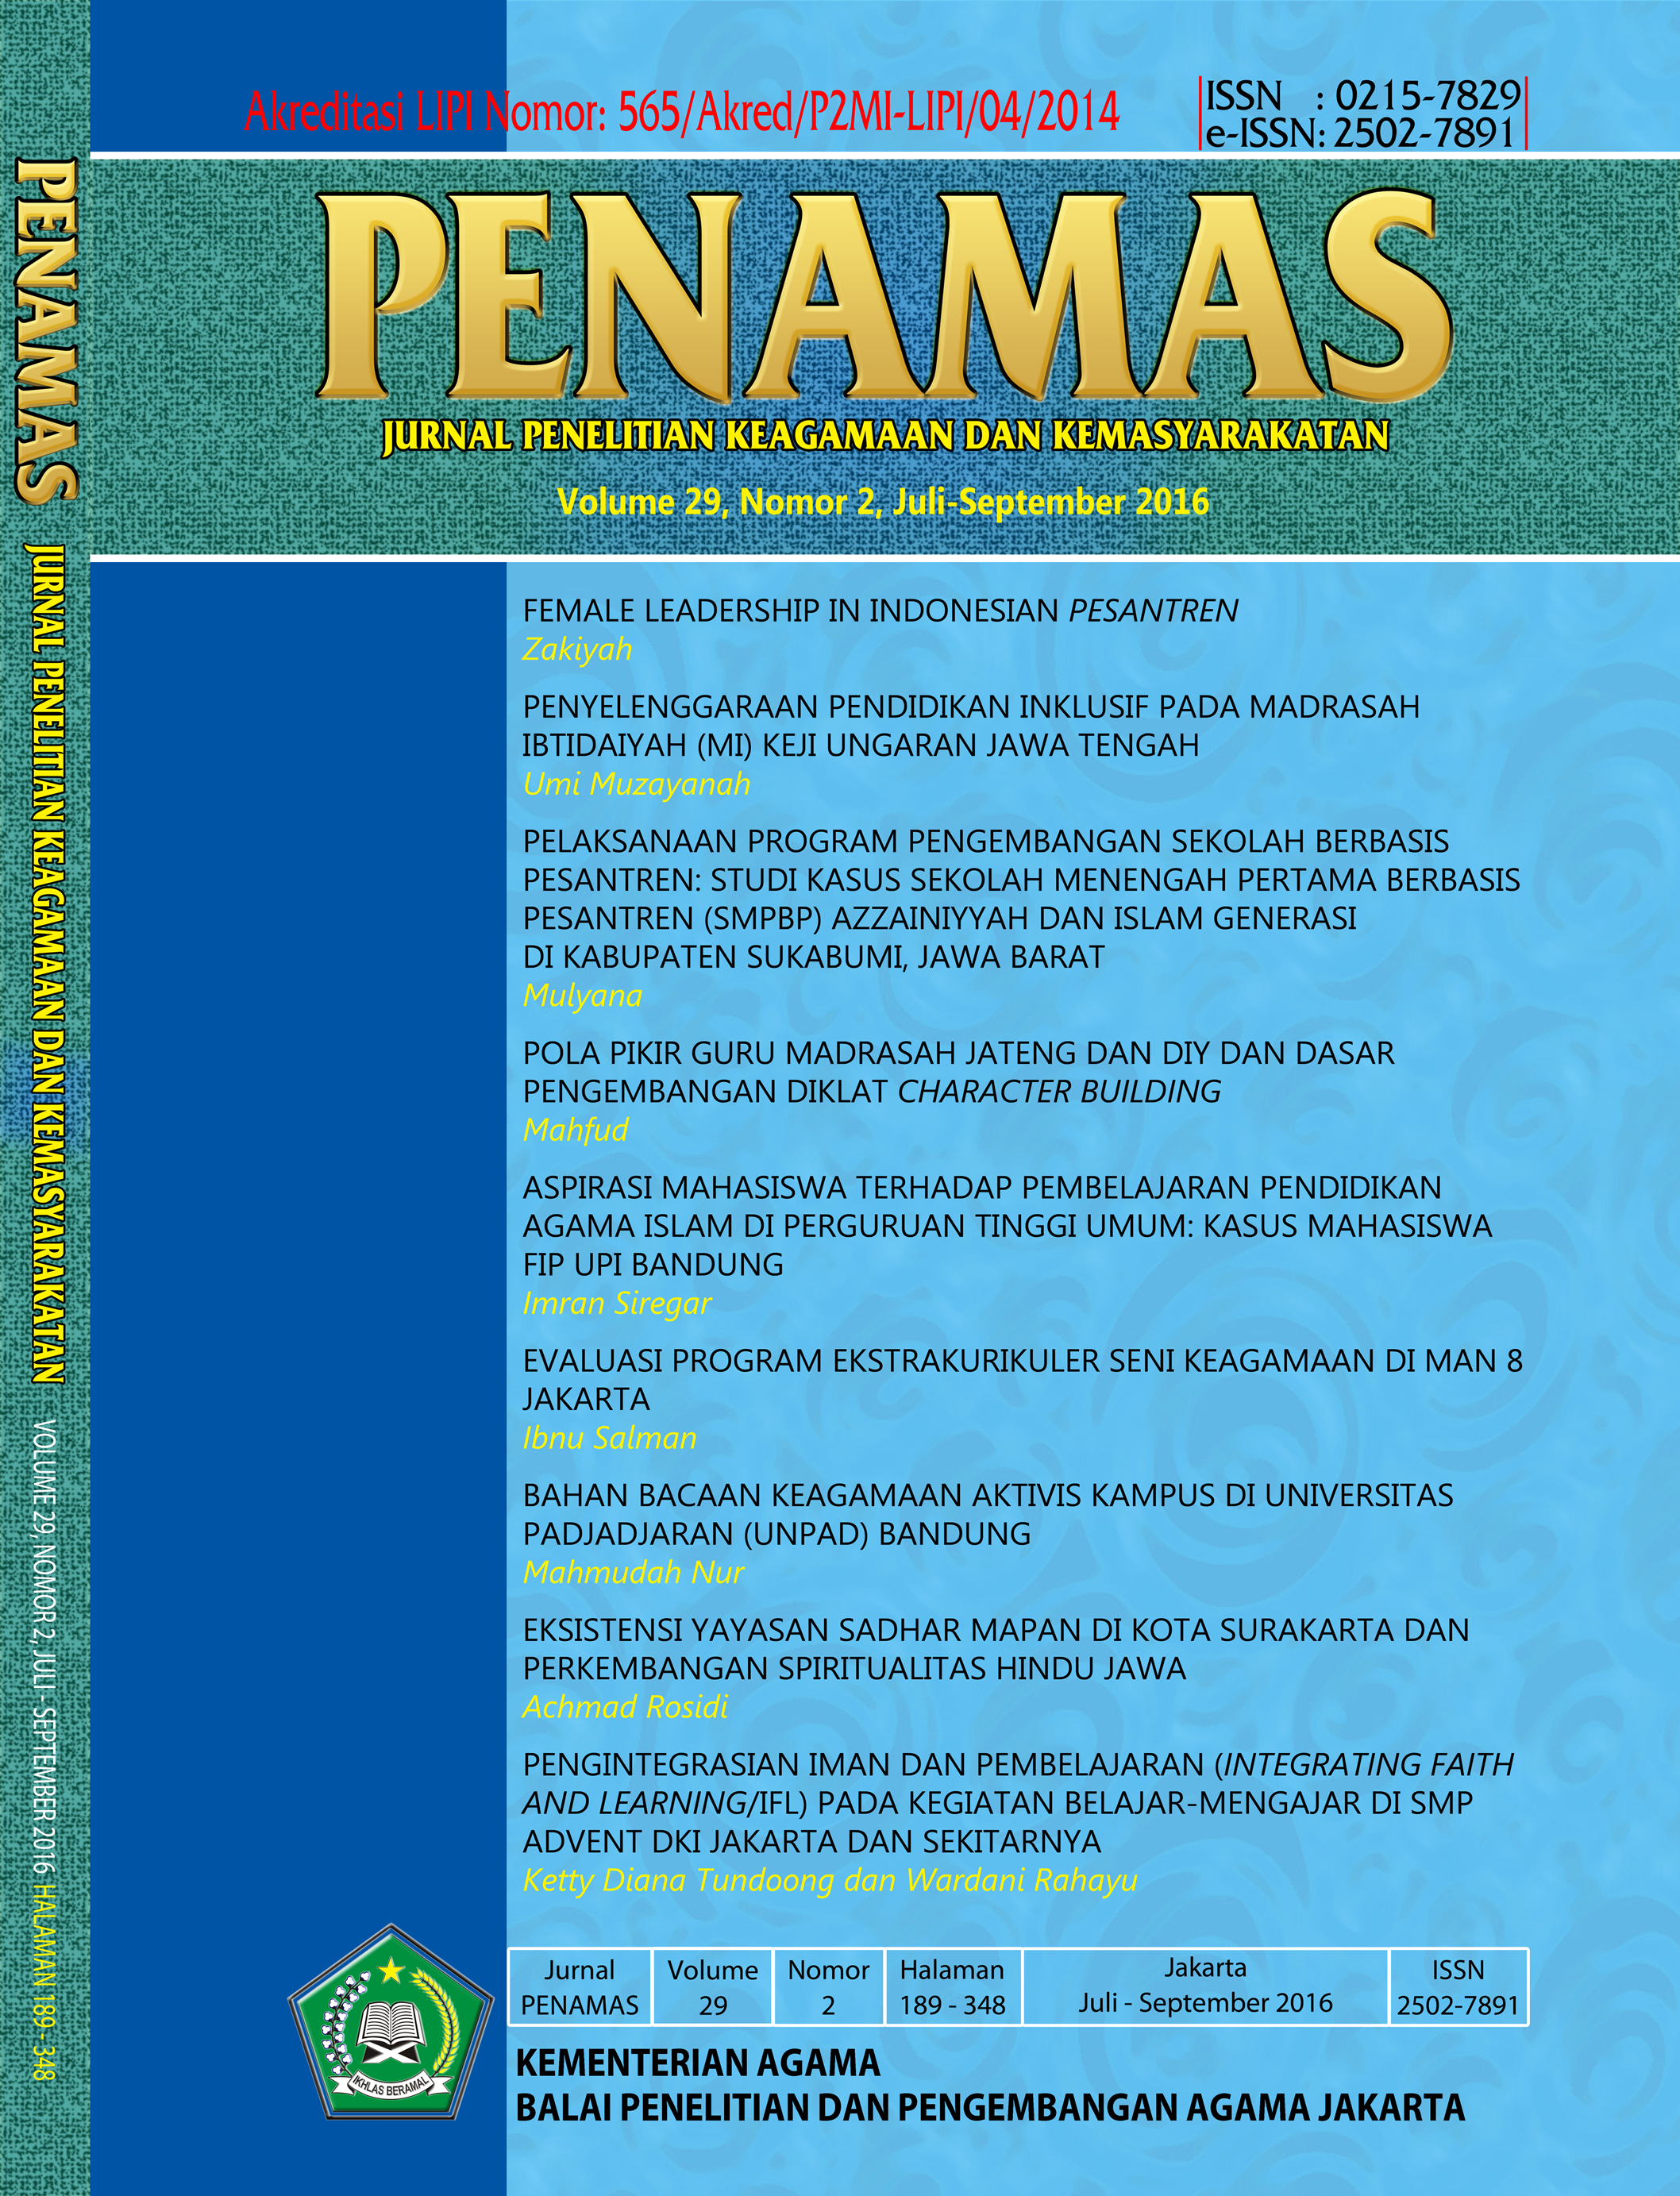 Jurnal Penamas, Volume 29, Nomor 2, Juli-September 2016